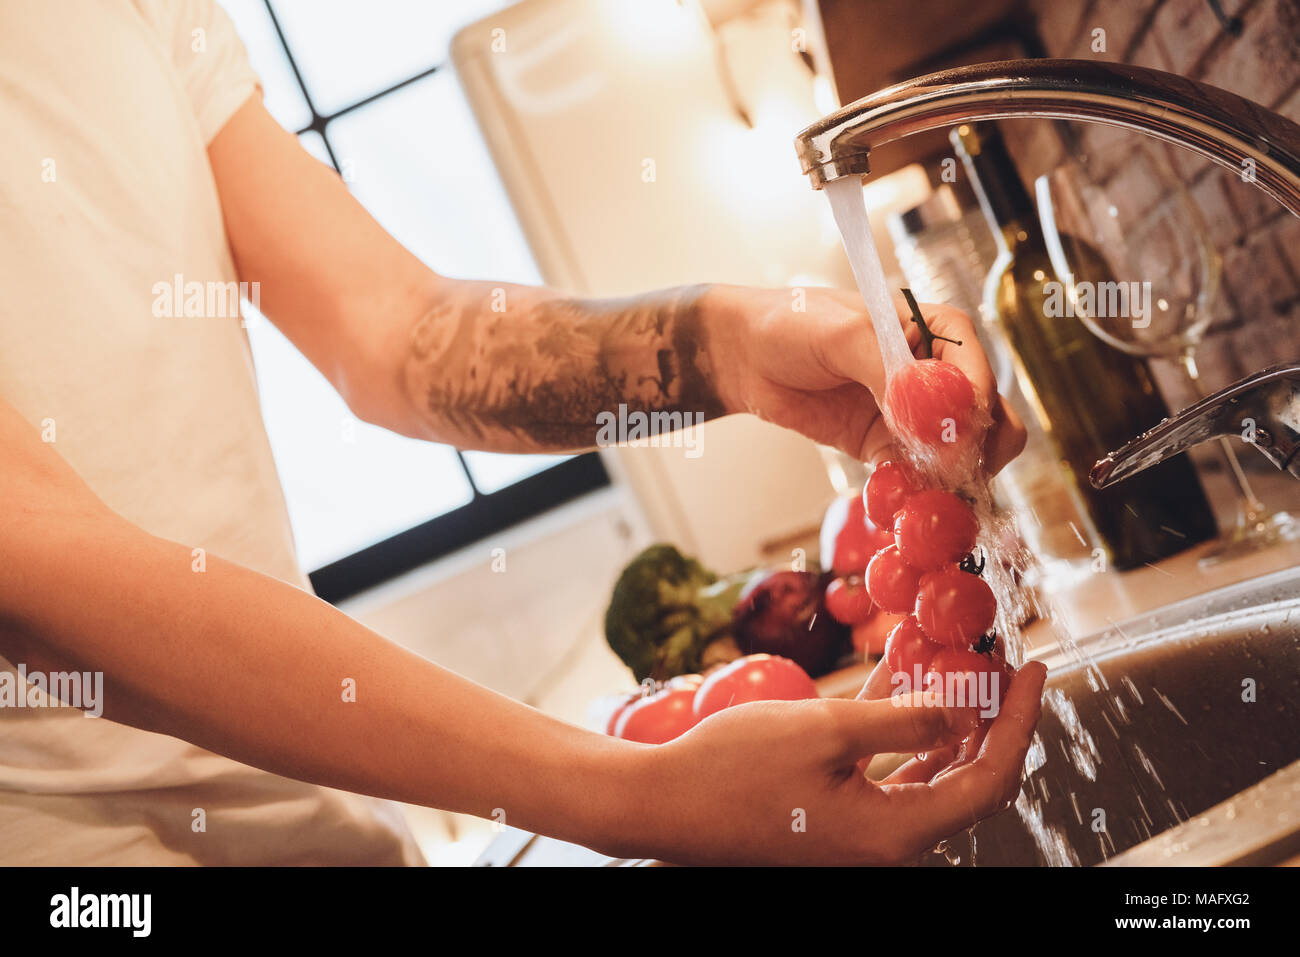 Norme in materia di igiene. Lavare le verdure e la frutta prima di mangiare o di cottura. Indoor, cucina home interno, studio shot. Foto Stock